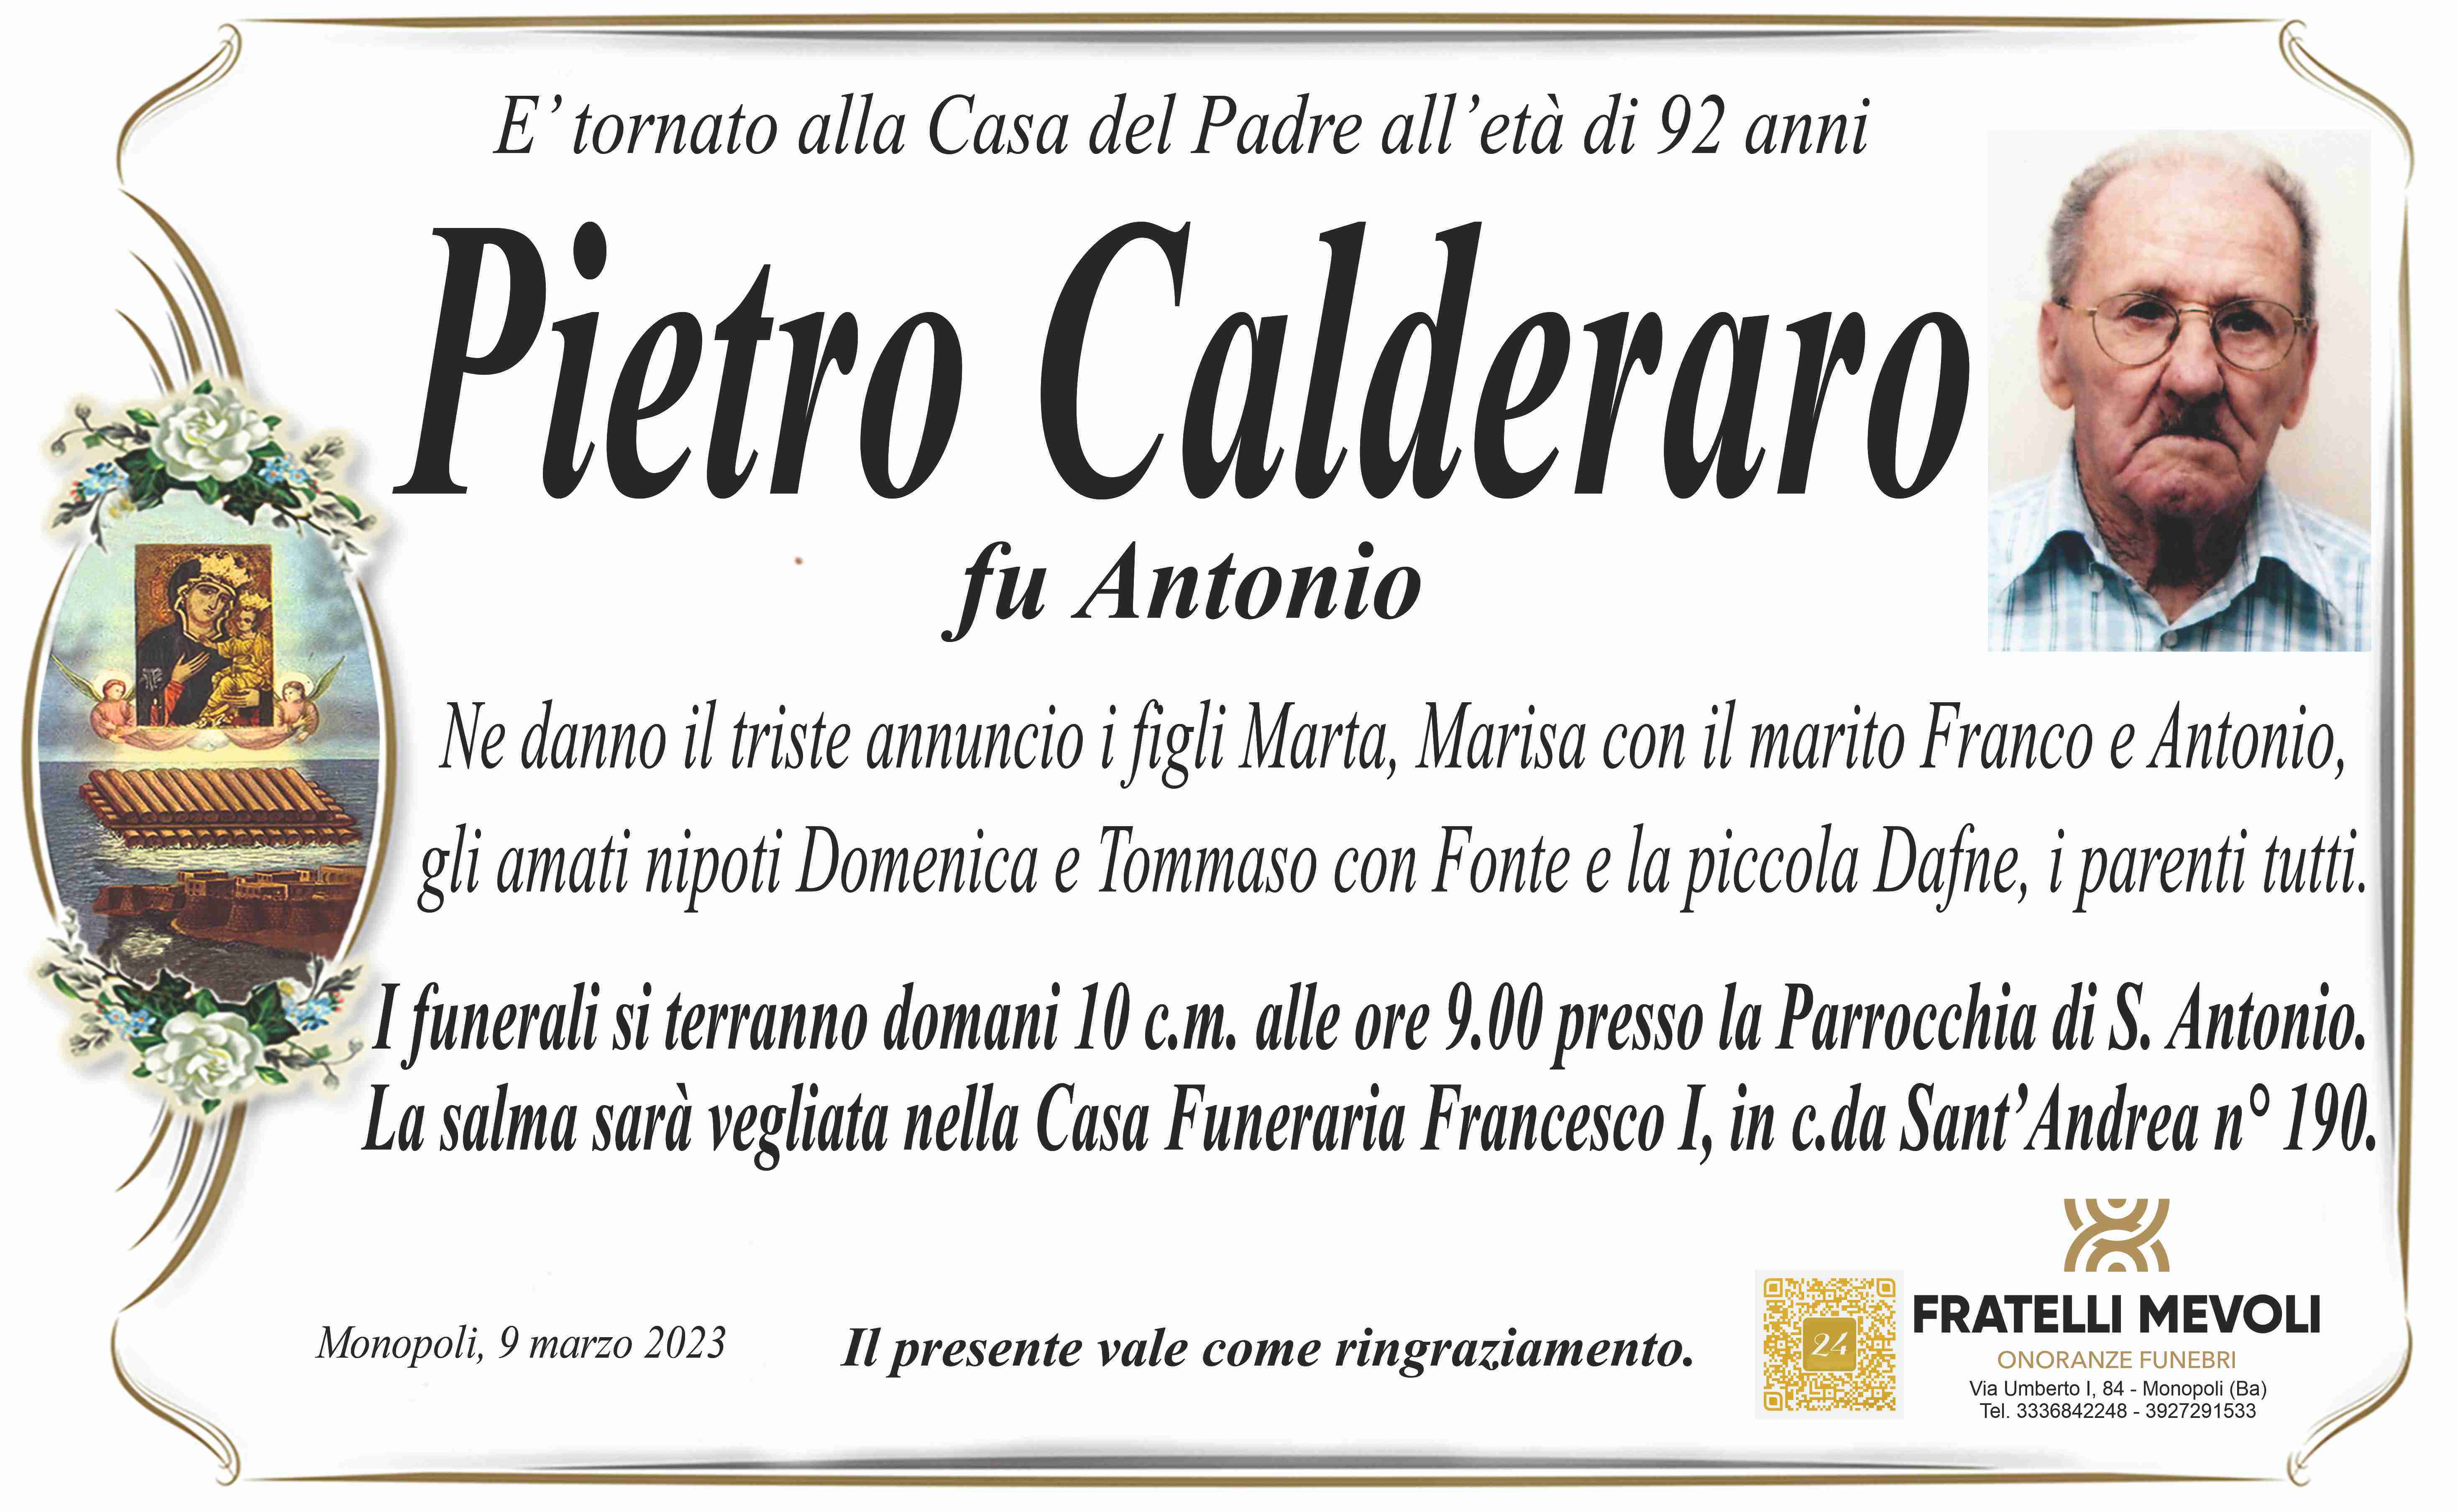 Pietro Calderaro